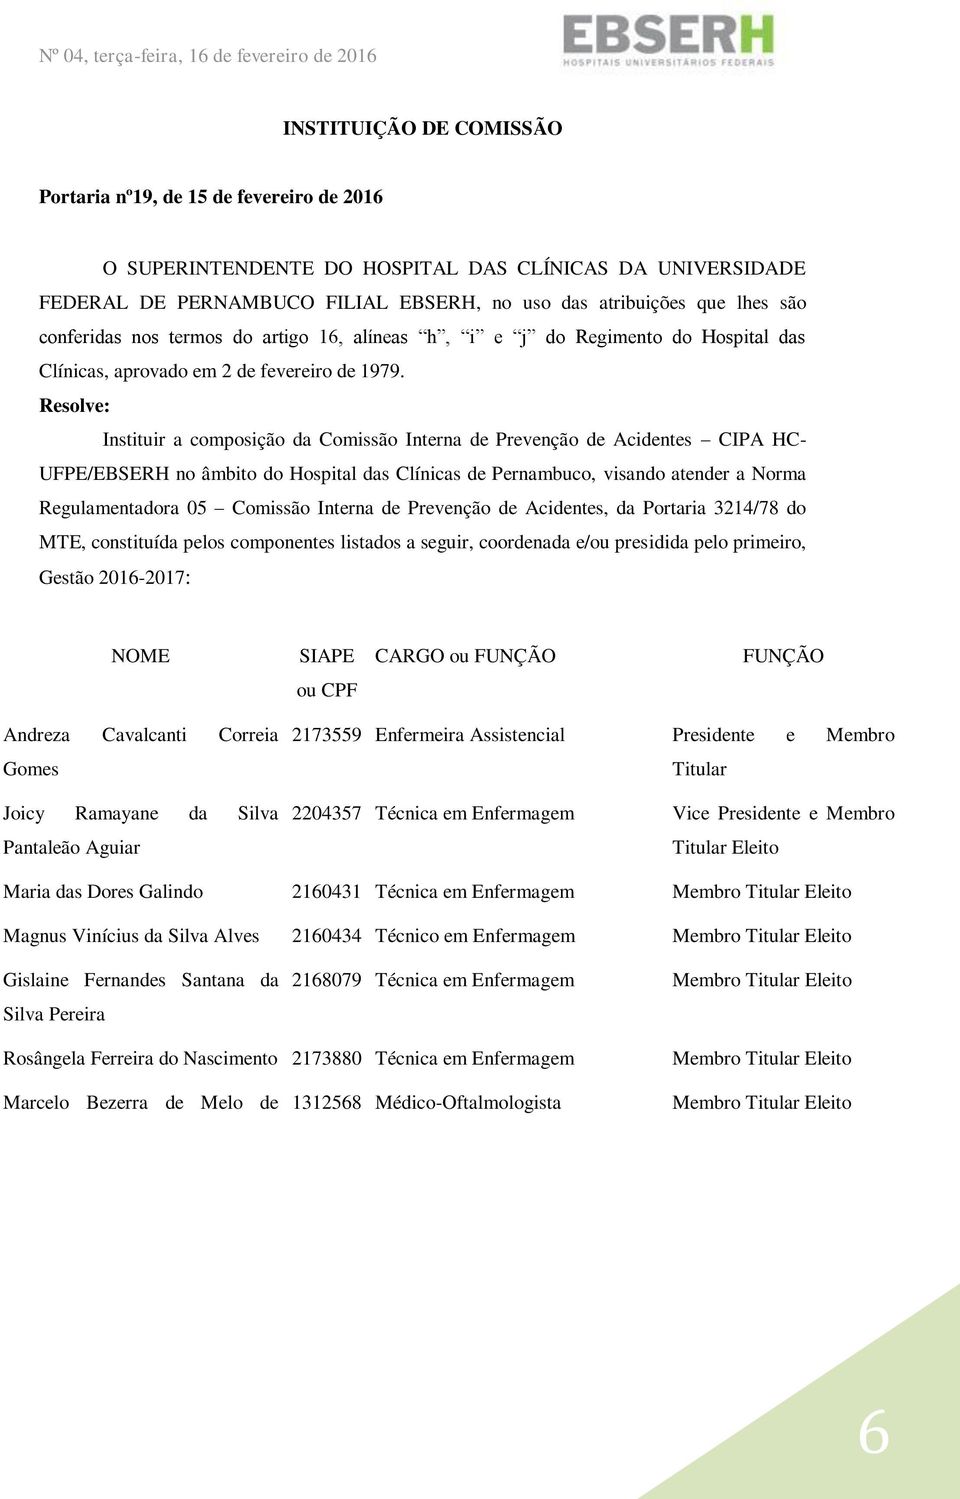 Resolve: Instituir a composição da Comissão Interna de Prevenção de Acidentes CIPA HC- UFPE/EBSERH no âmbito do Hospital das Clínicas de Pernambuco, visando atender a Norma Regulamentadora 05